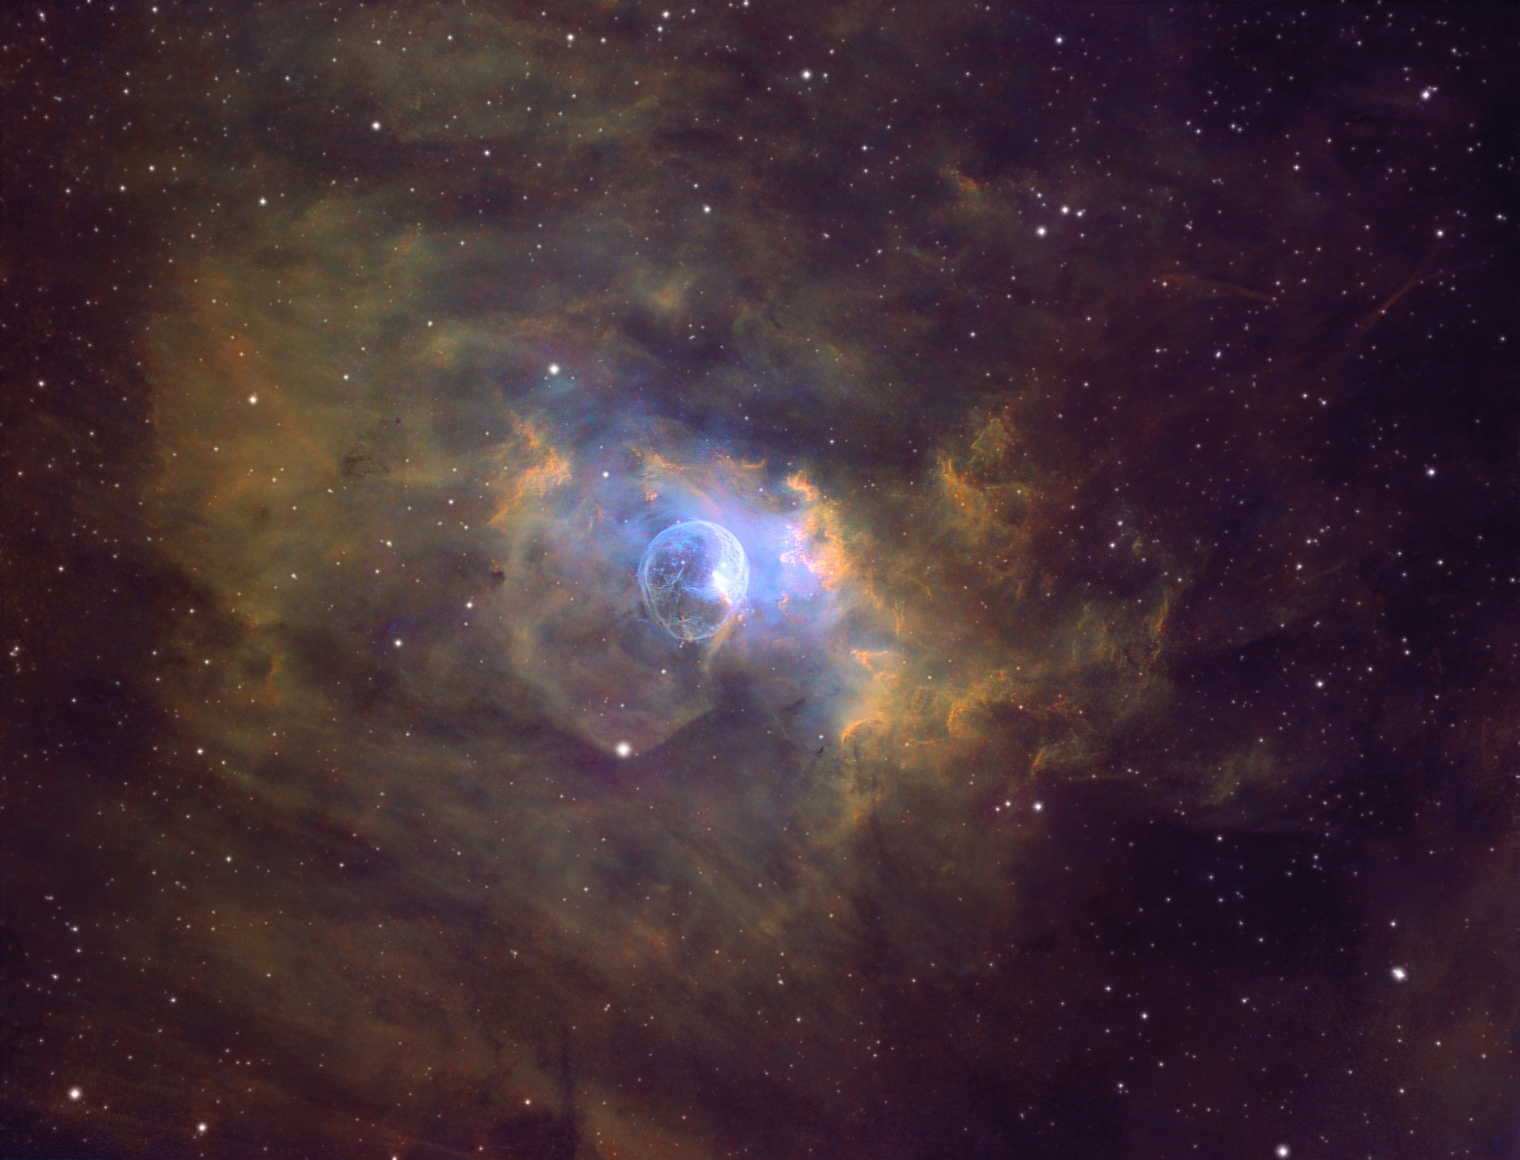 NGC 7635 SHO